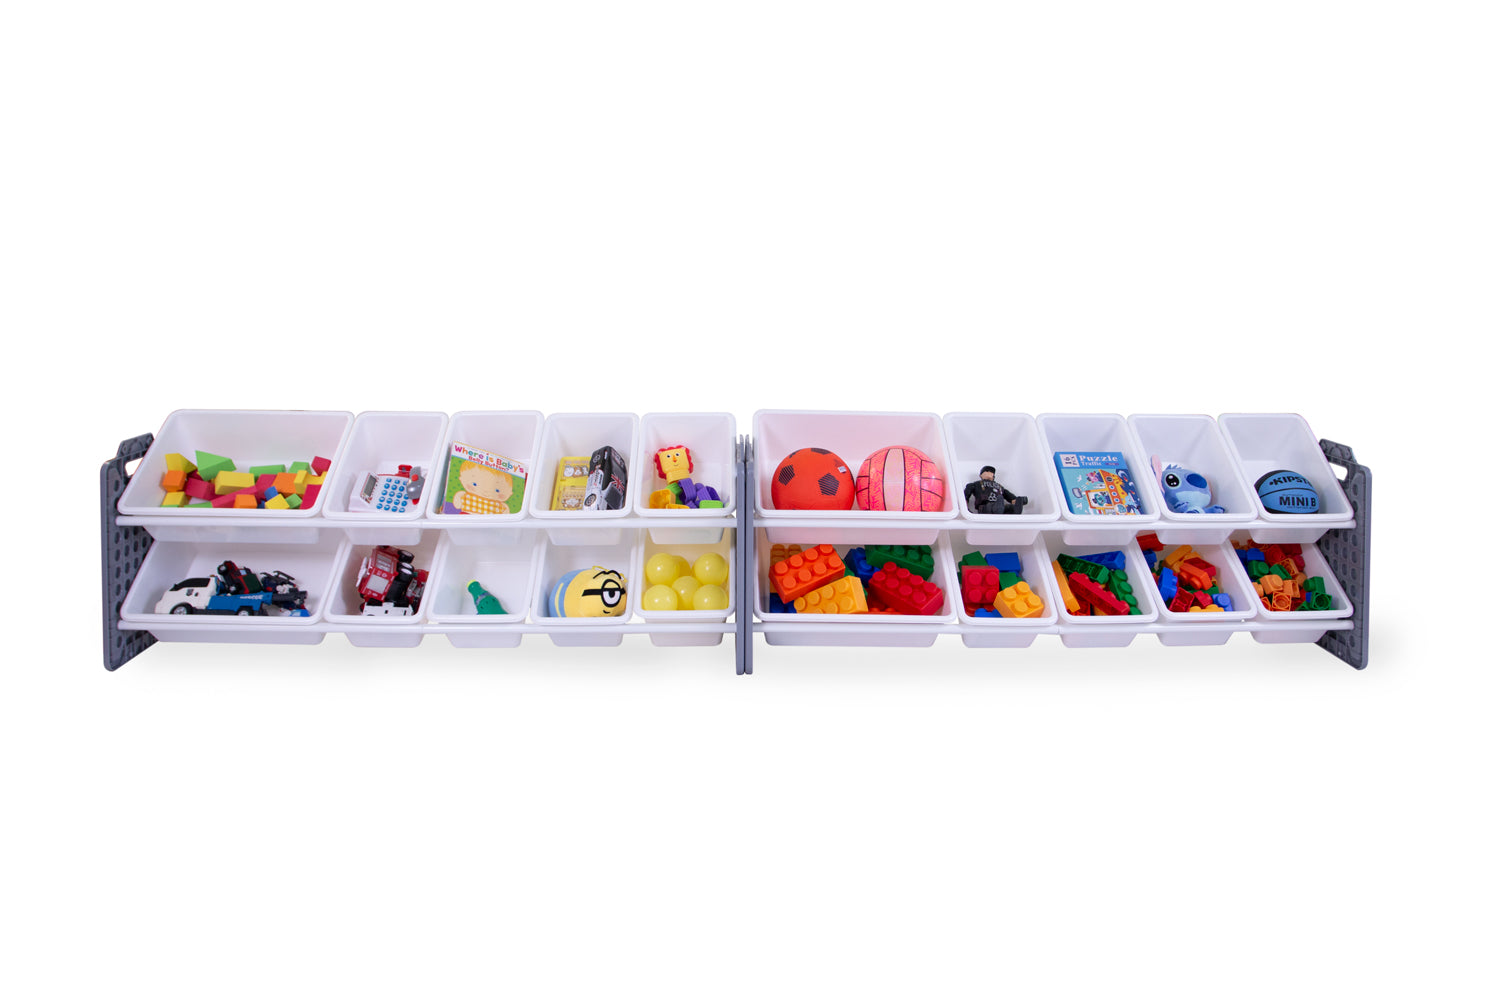 UNiPLAY 20 Bins Toy Storage Organizer - Gray (UB45812)